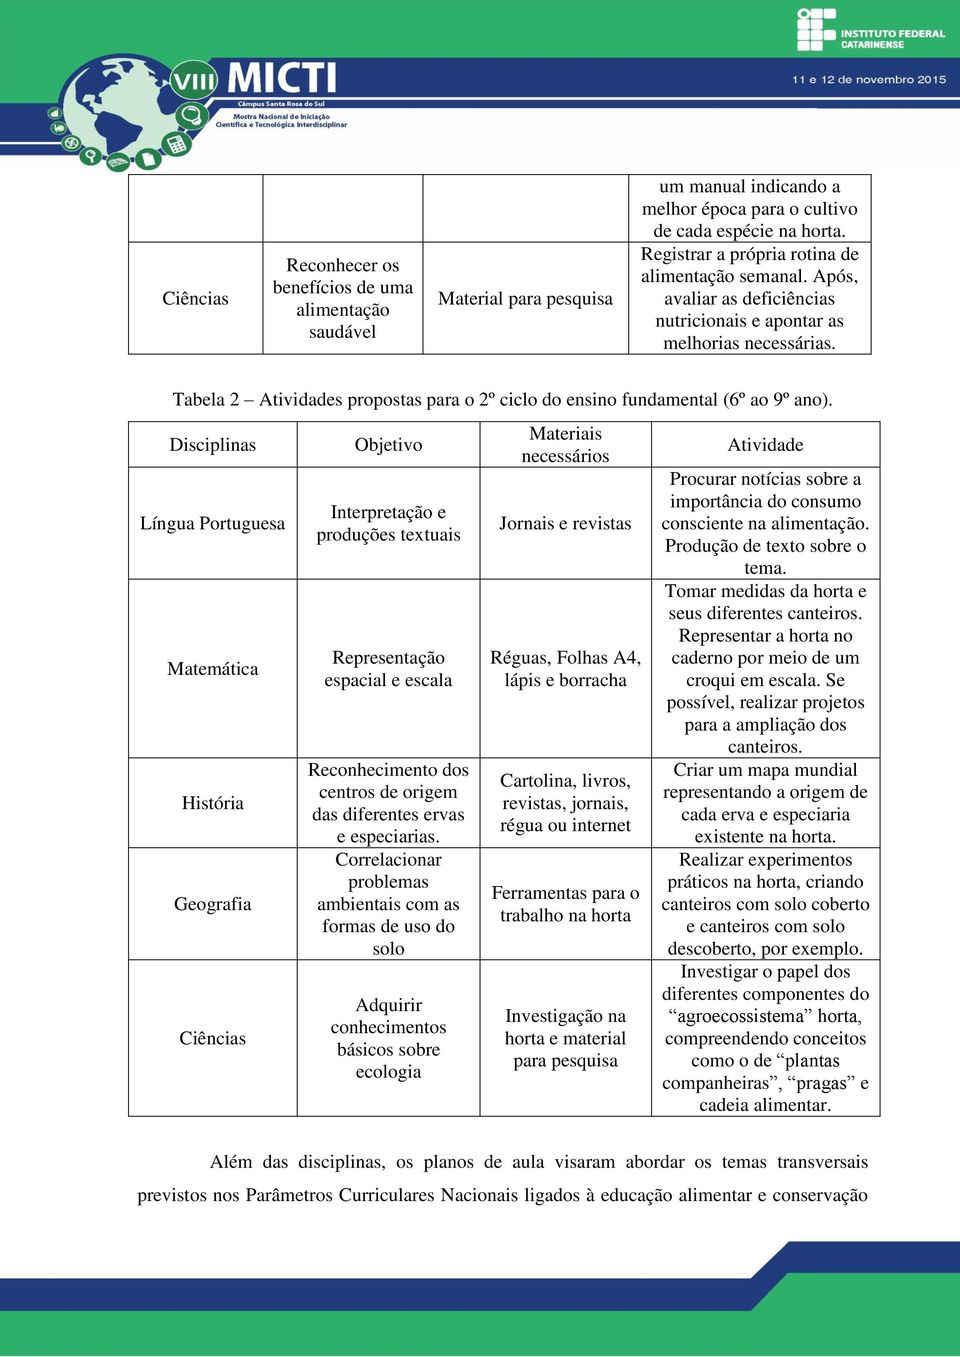 Tabela 2 Atividades propostas para o 2º ciclo do ensino fundamental (6º ao 9º ano).